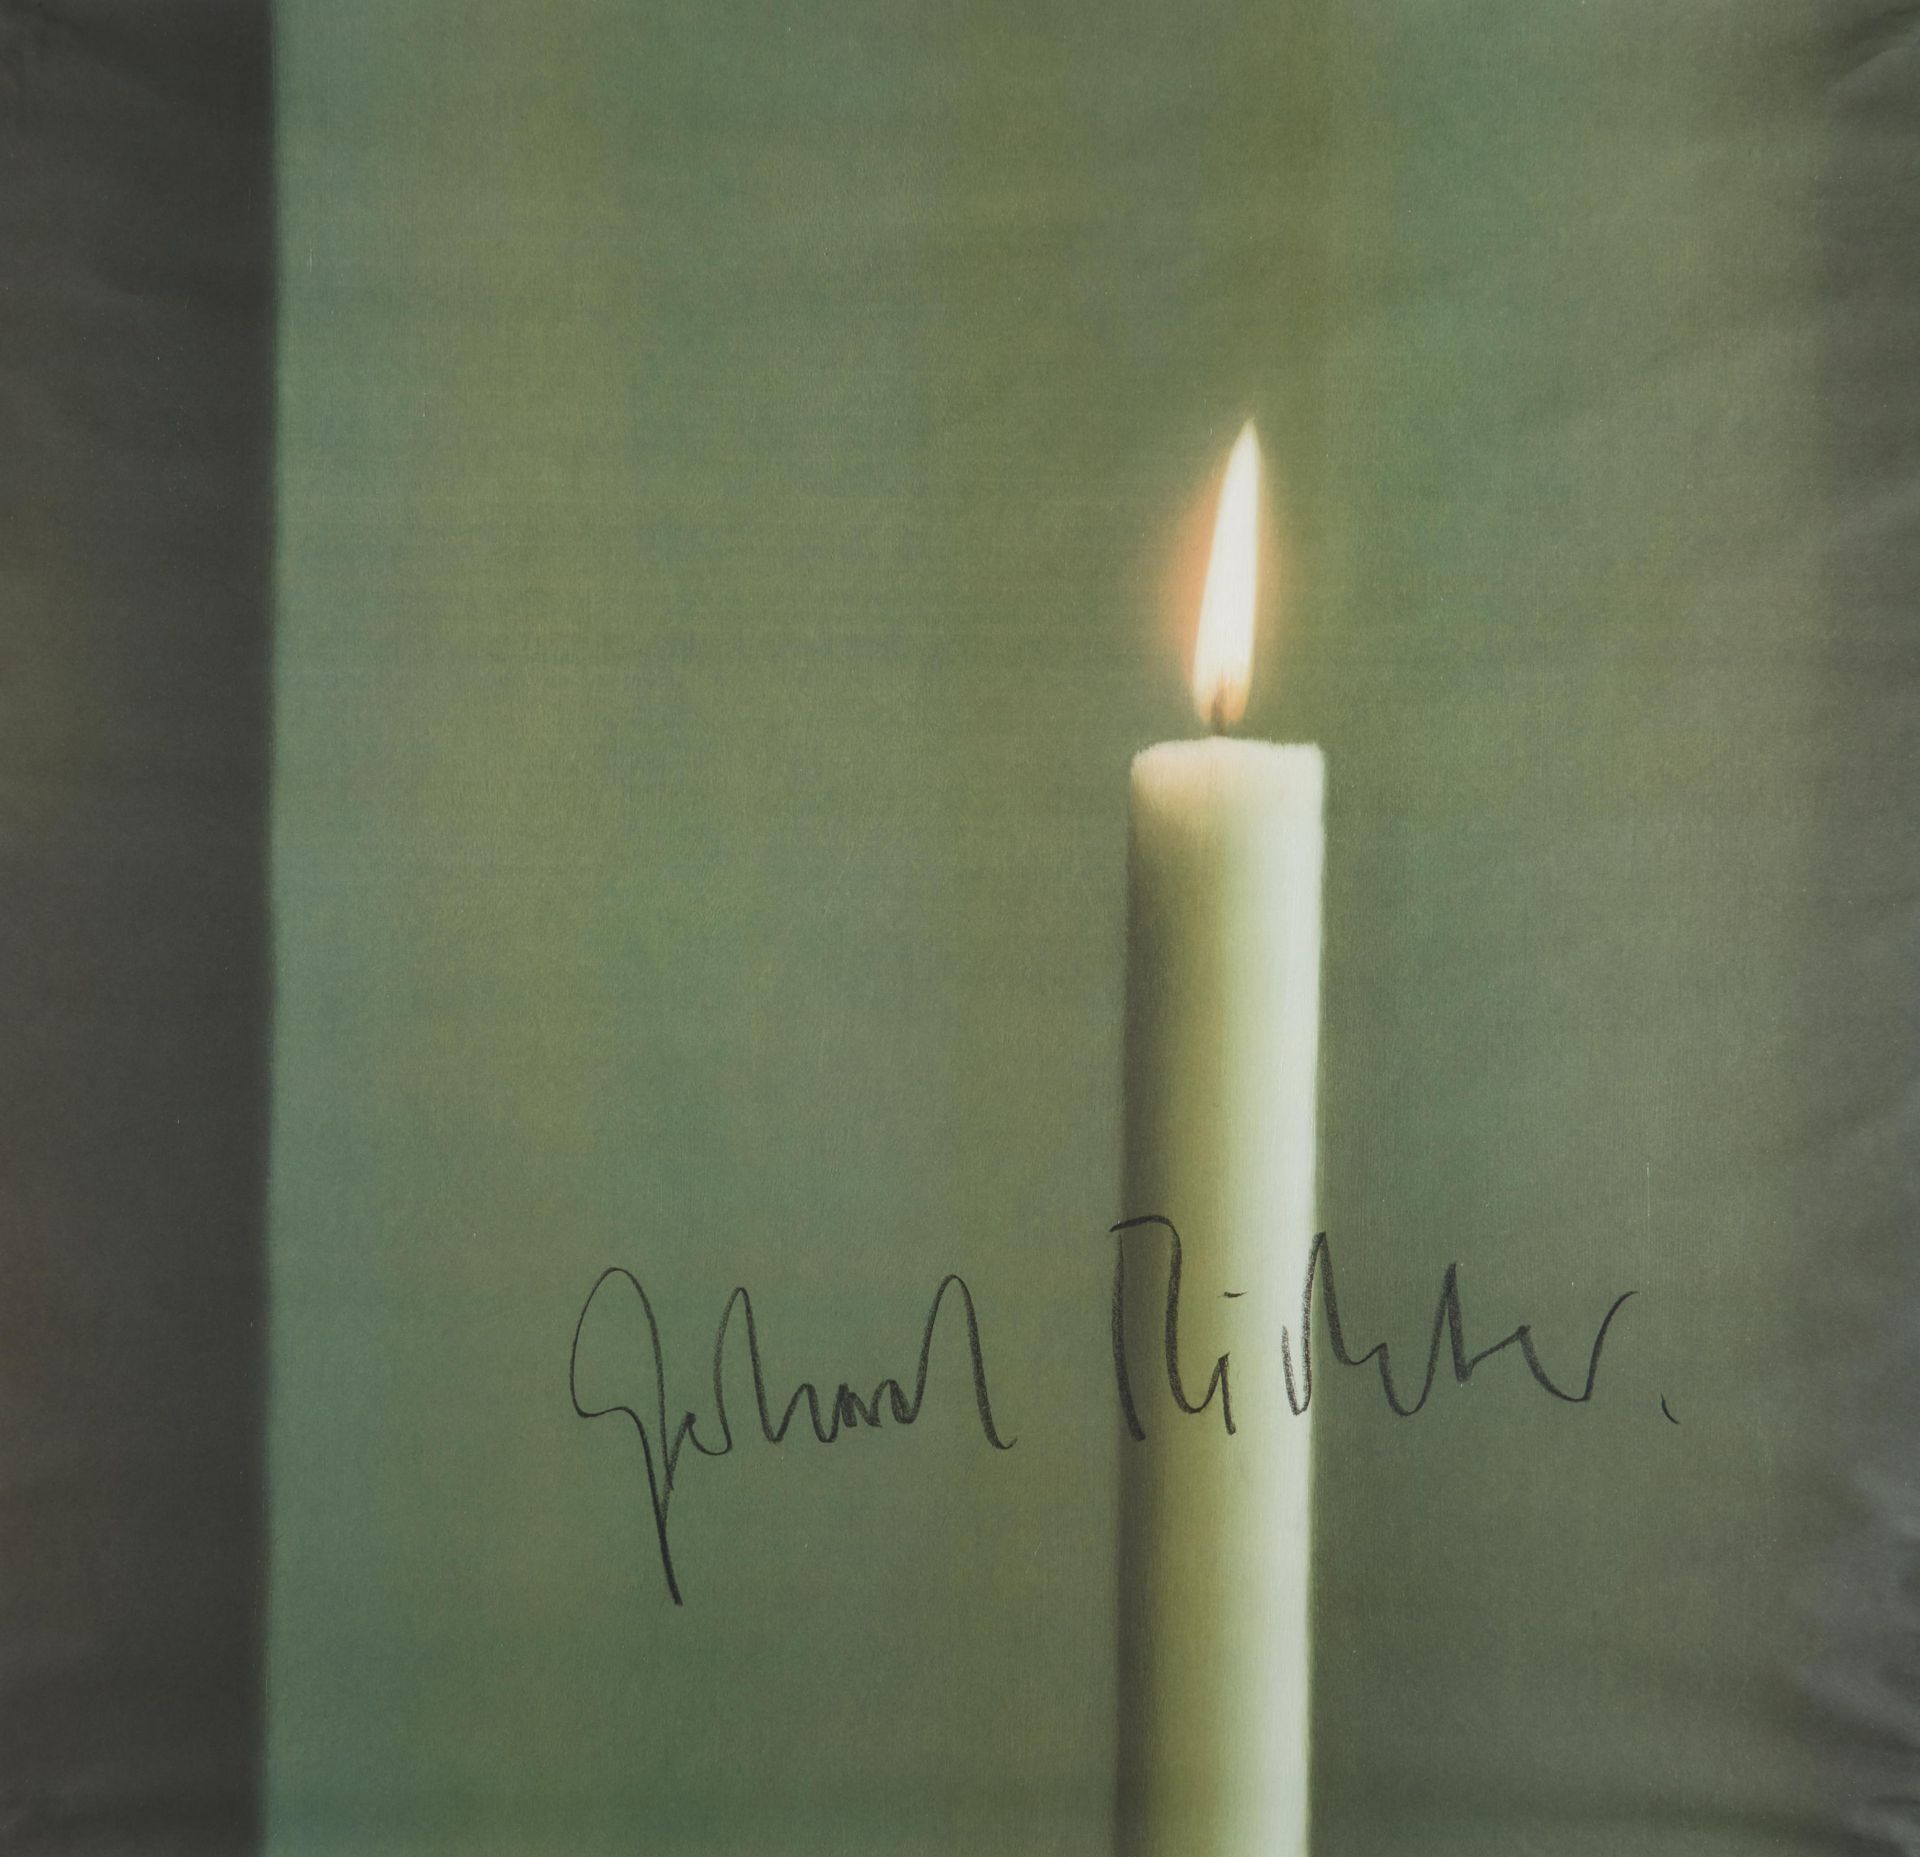 Richter, Gerhard 1932 Dresden Kerze I. 1988. Farboffset auf Offsetpapier. 98,5 x 94,5cm. Signiert.